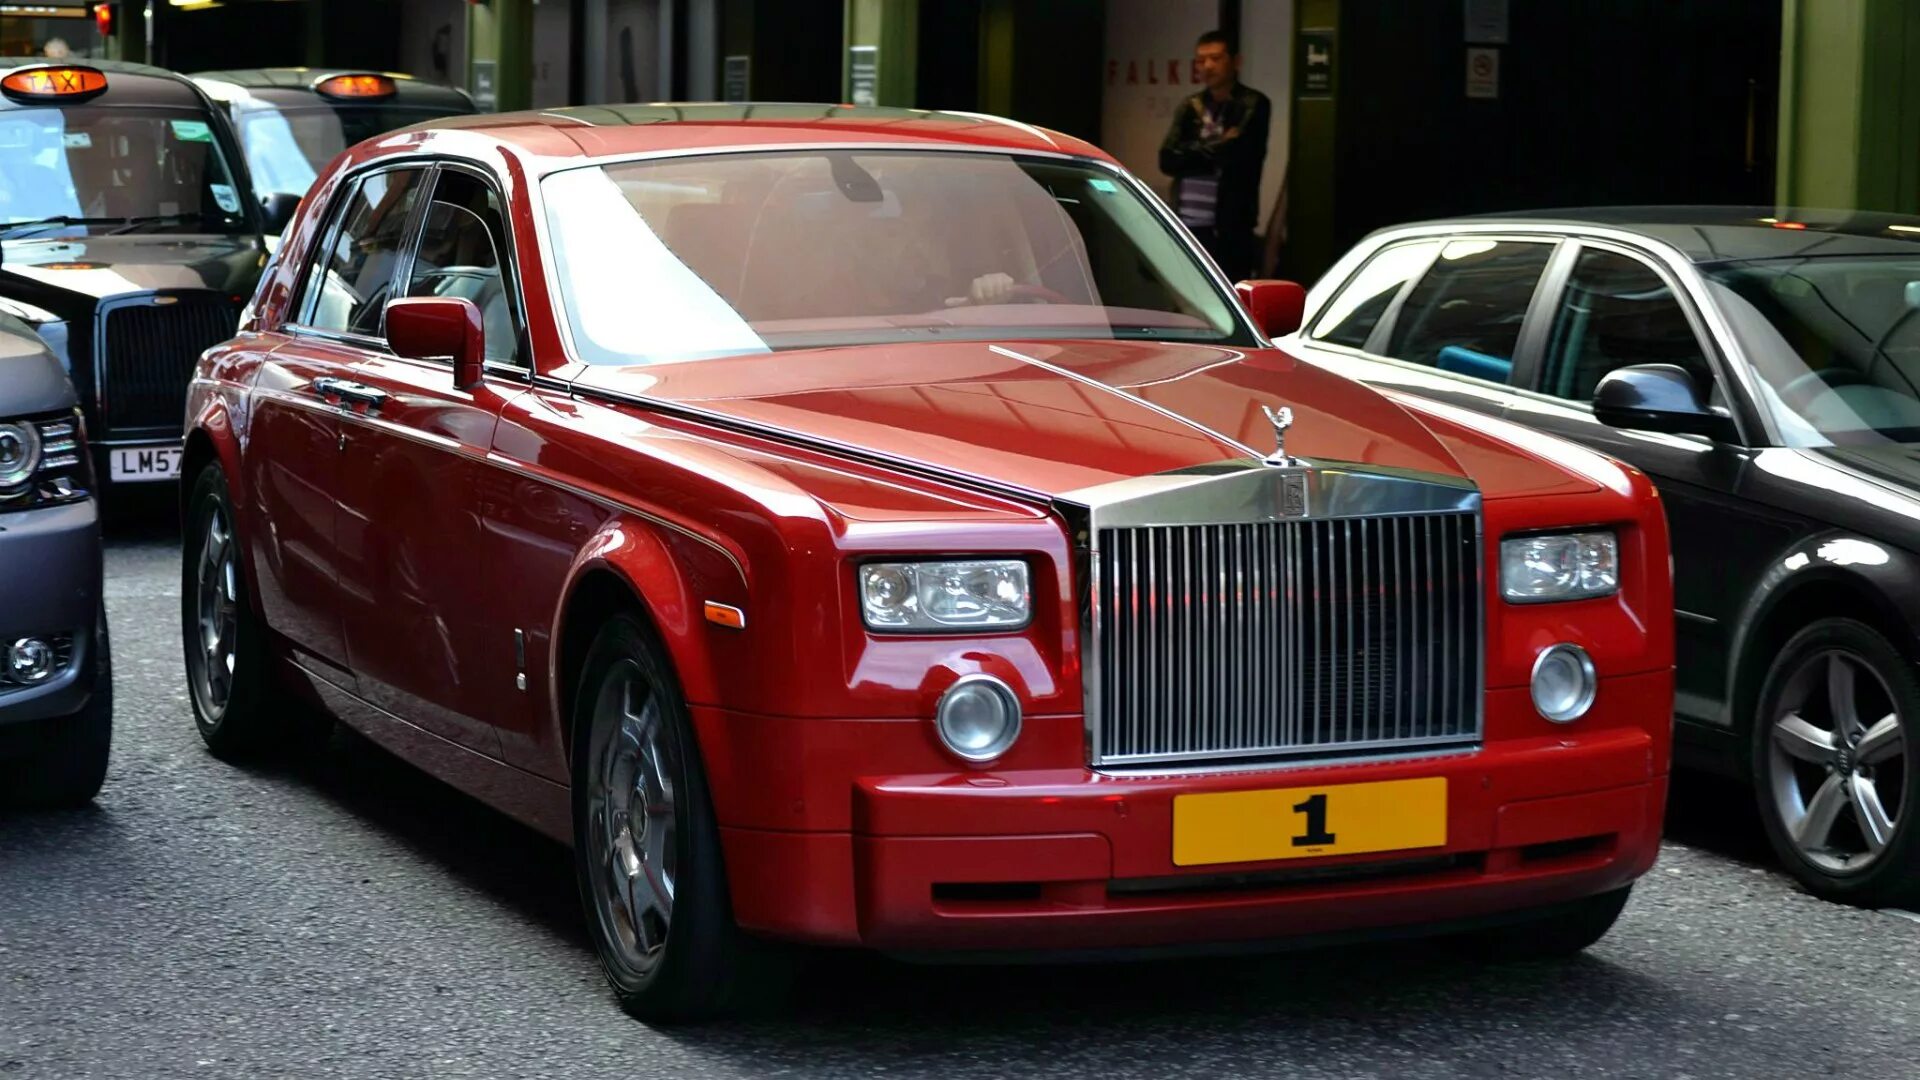 Похожие на роллс ройс. Красный Роллс Ройс. Красный Rolls Royce Фантом. Rolls Royce Phantom красно чёрный. Роллс Ройс 1986 красный.